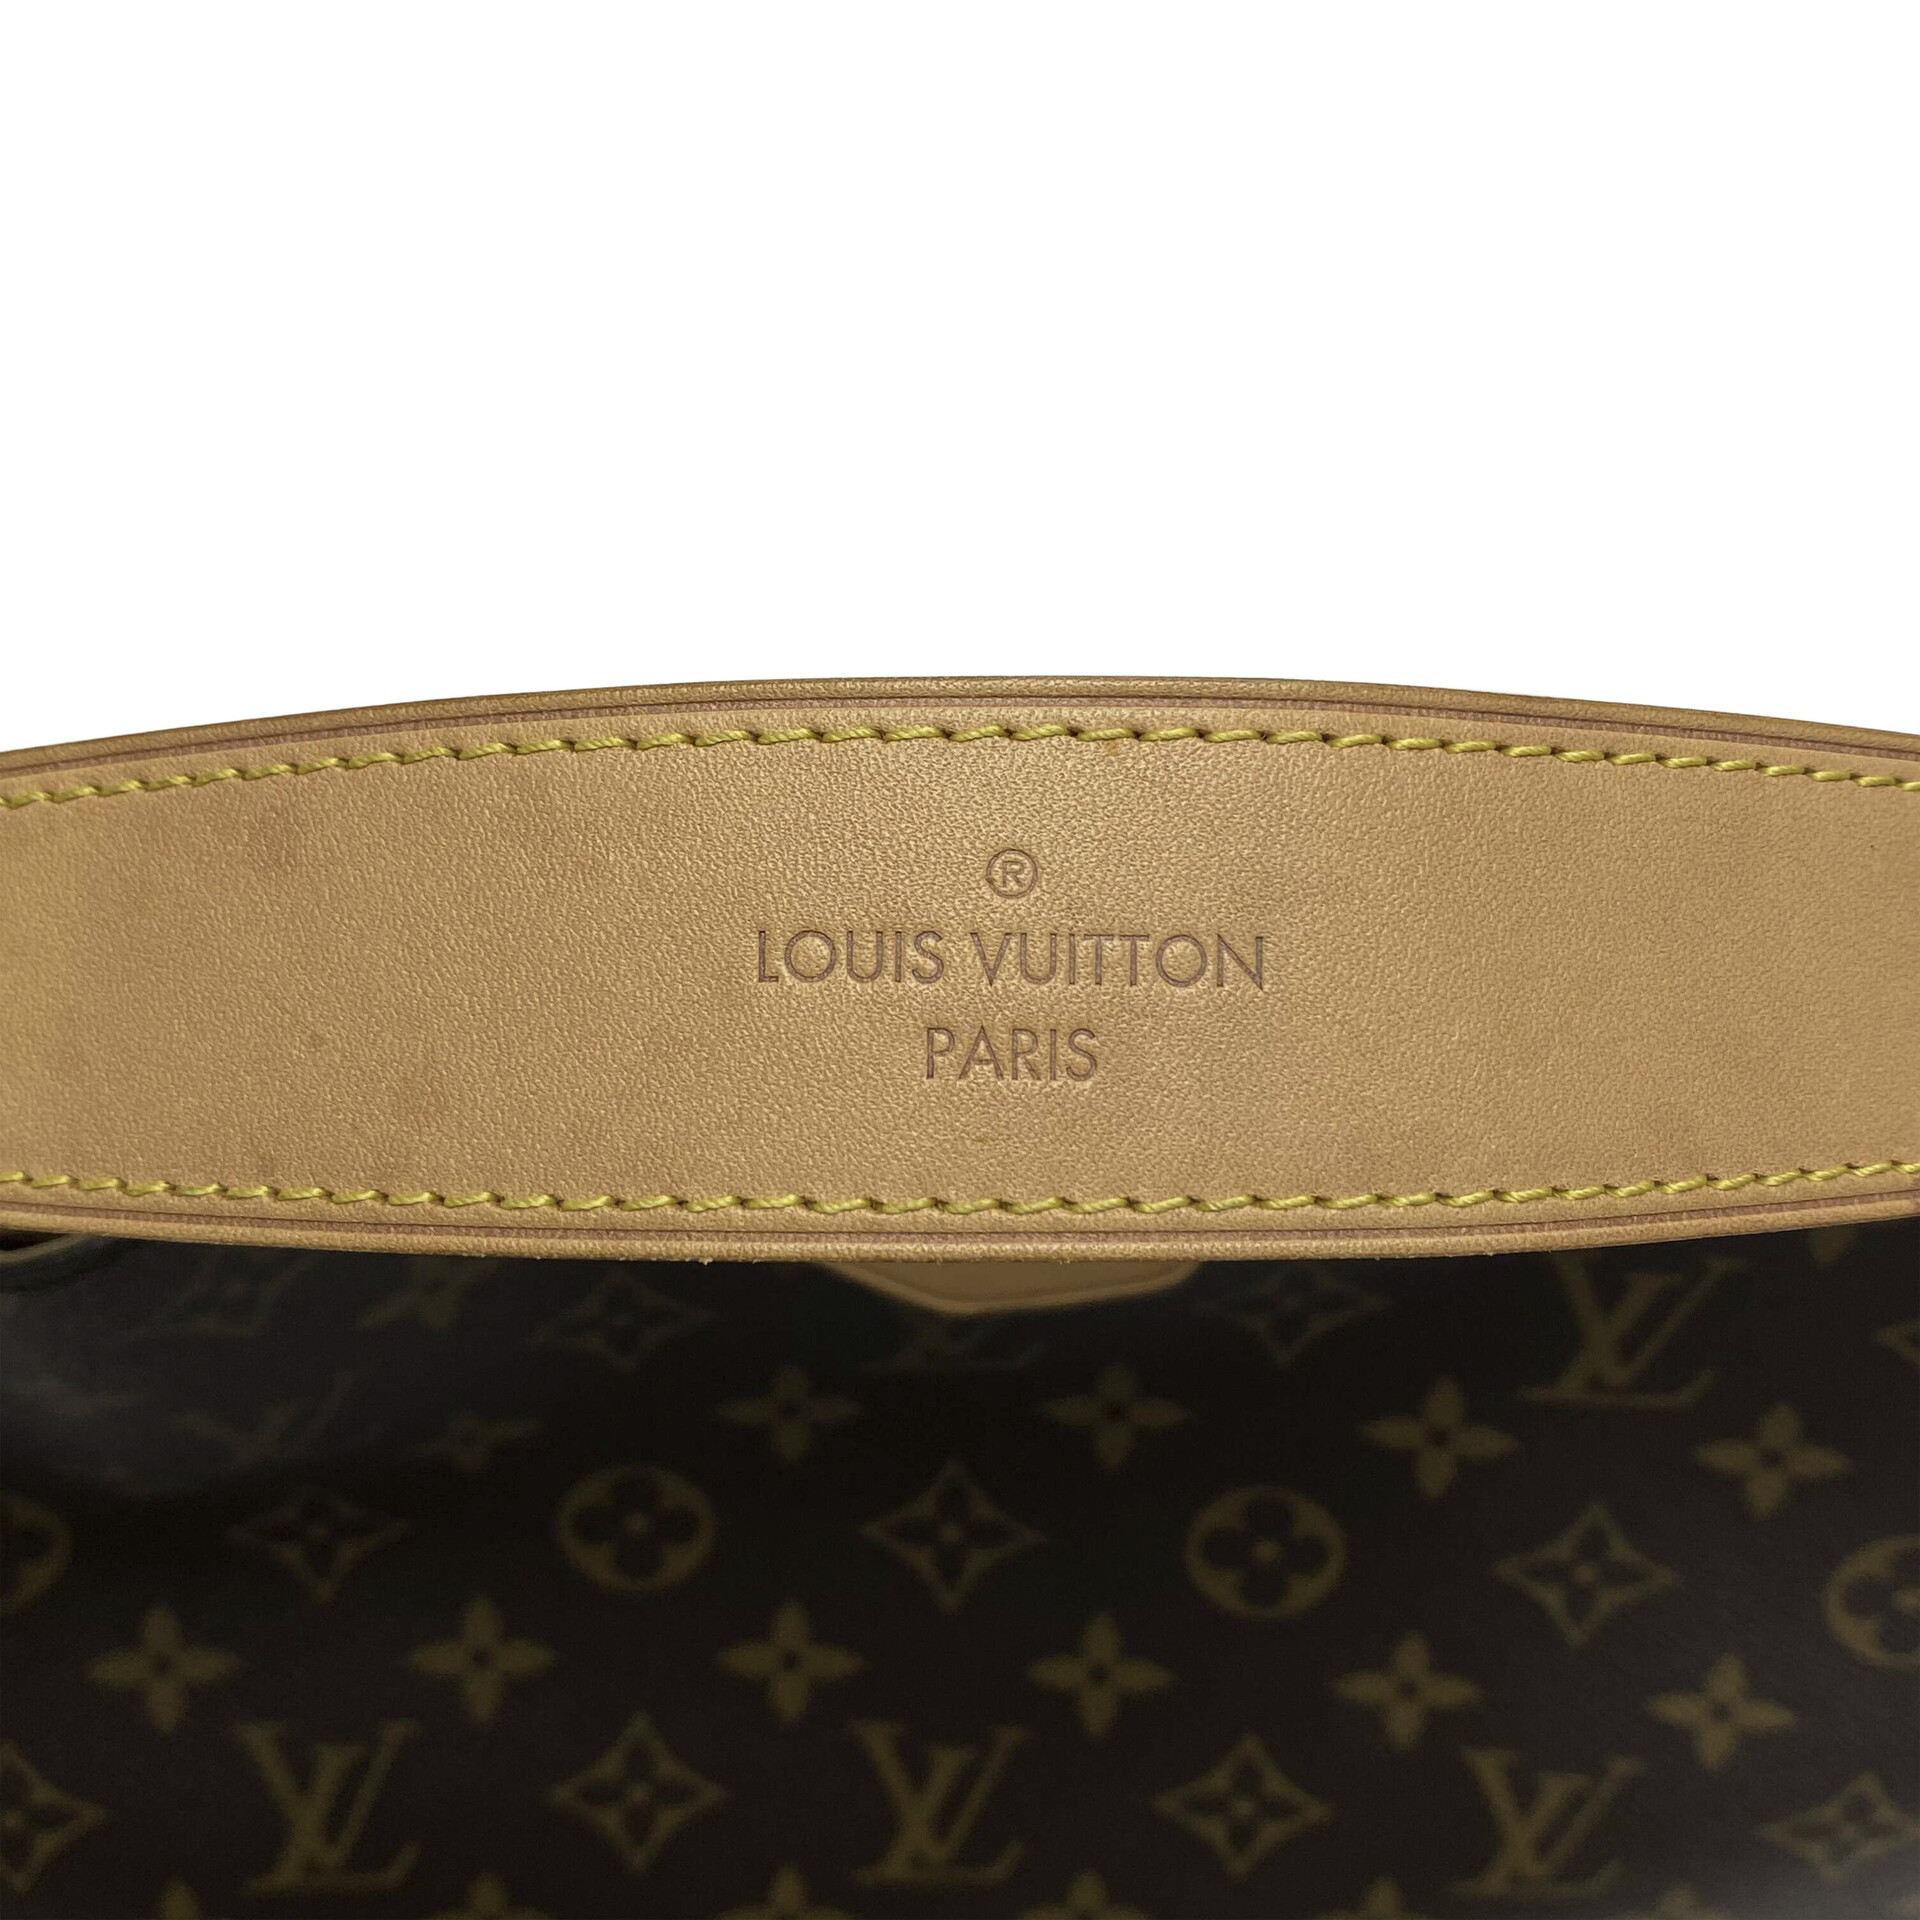 Bolsa Louis Vuitton Graceful MM